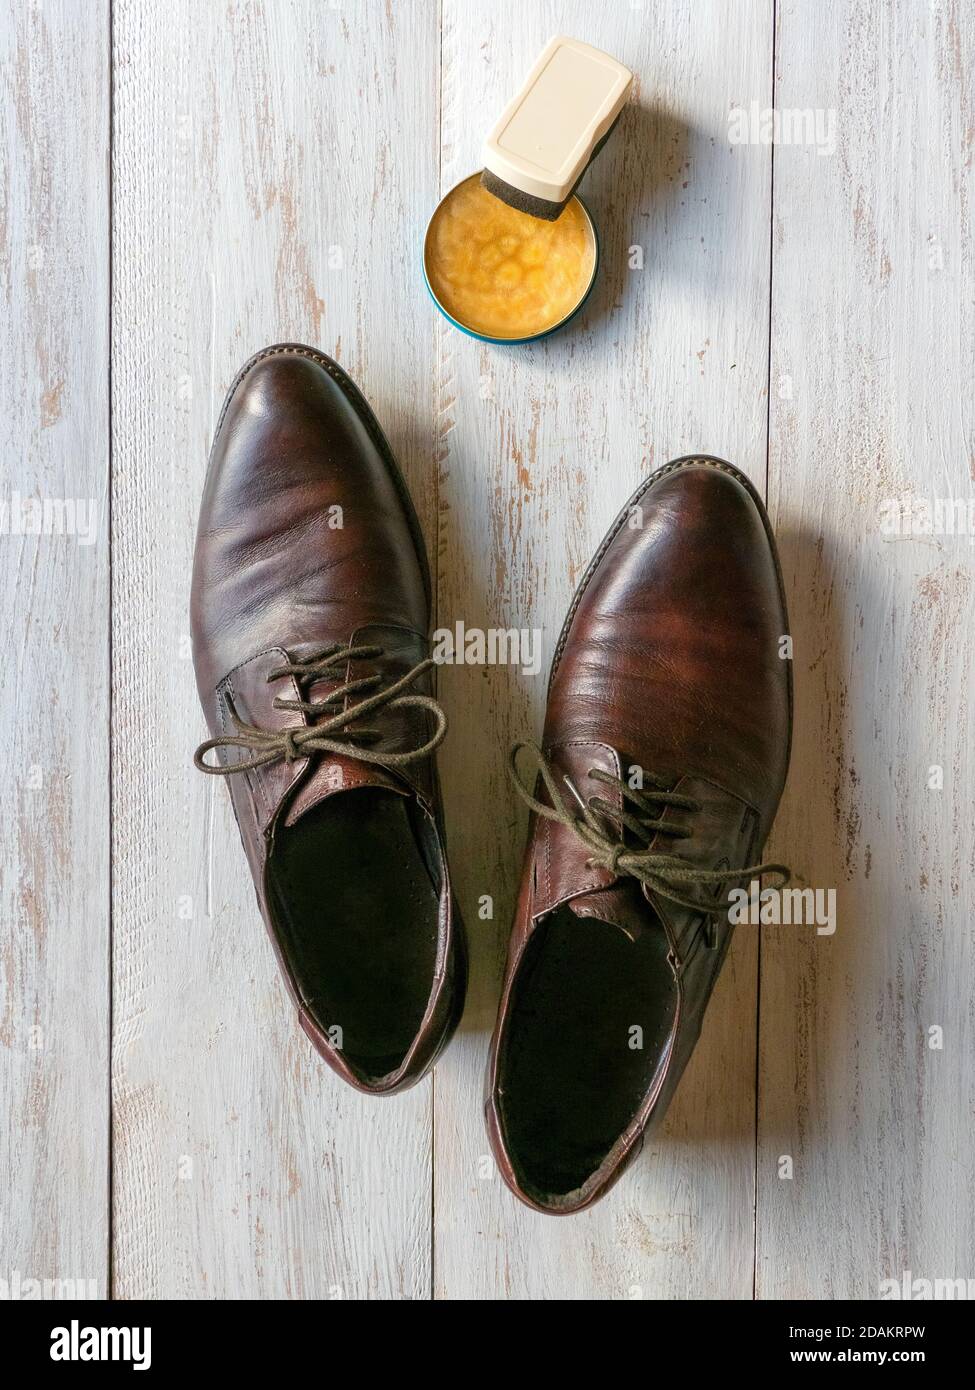 Schutzwachs für Lederschuhe. Konzept für die Schuhpflege. Ein Paar klassische Stiefel auf dem Holzboden. Stockfoto